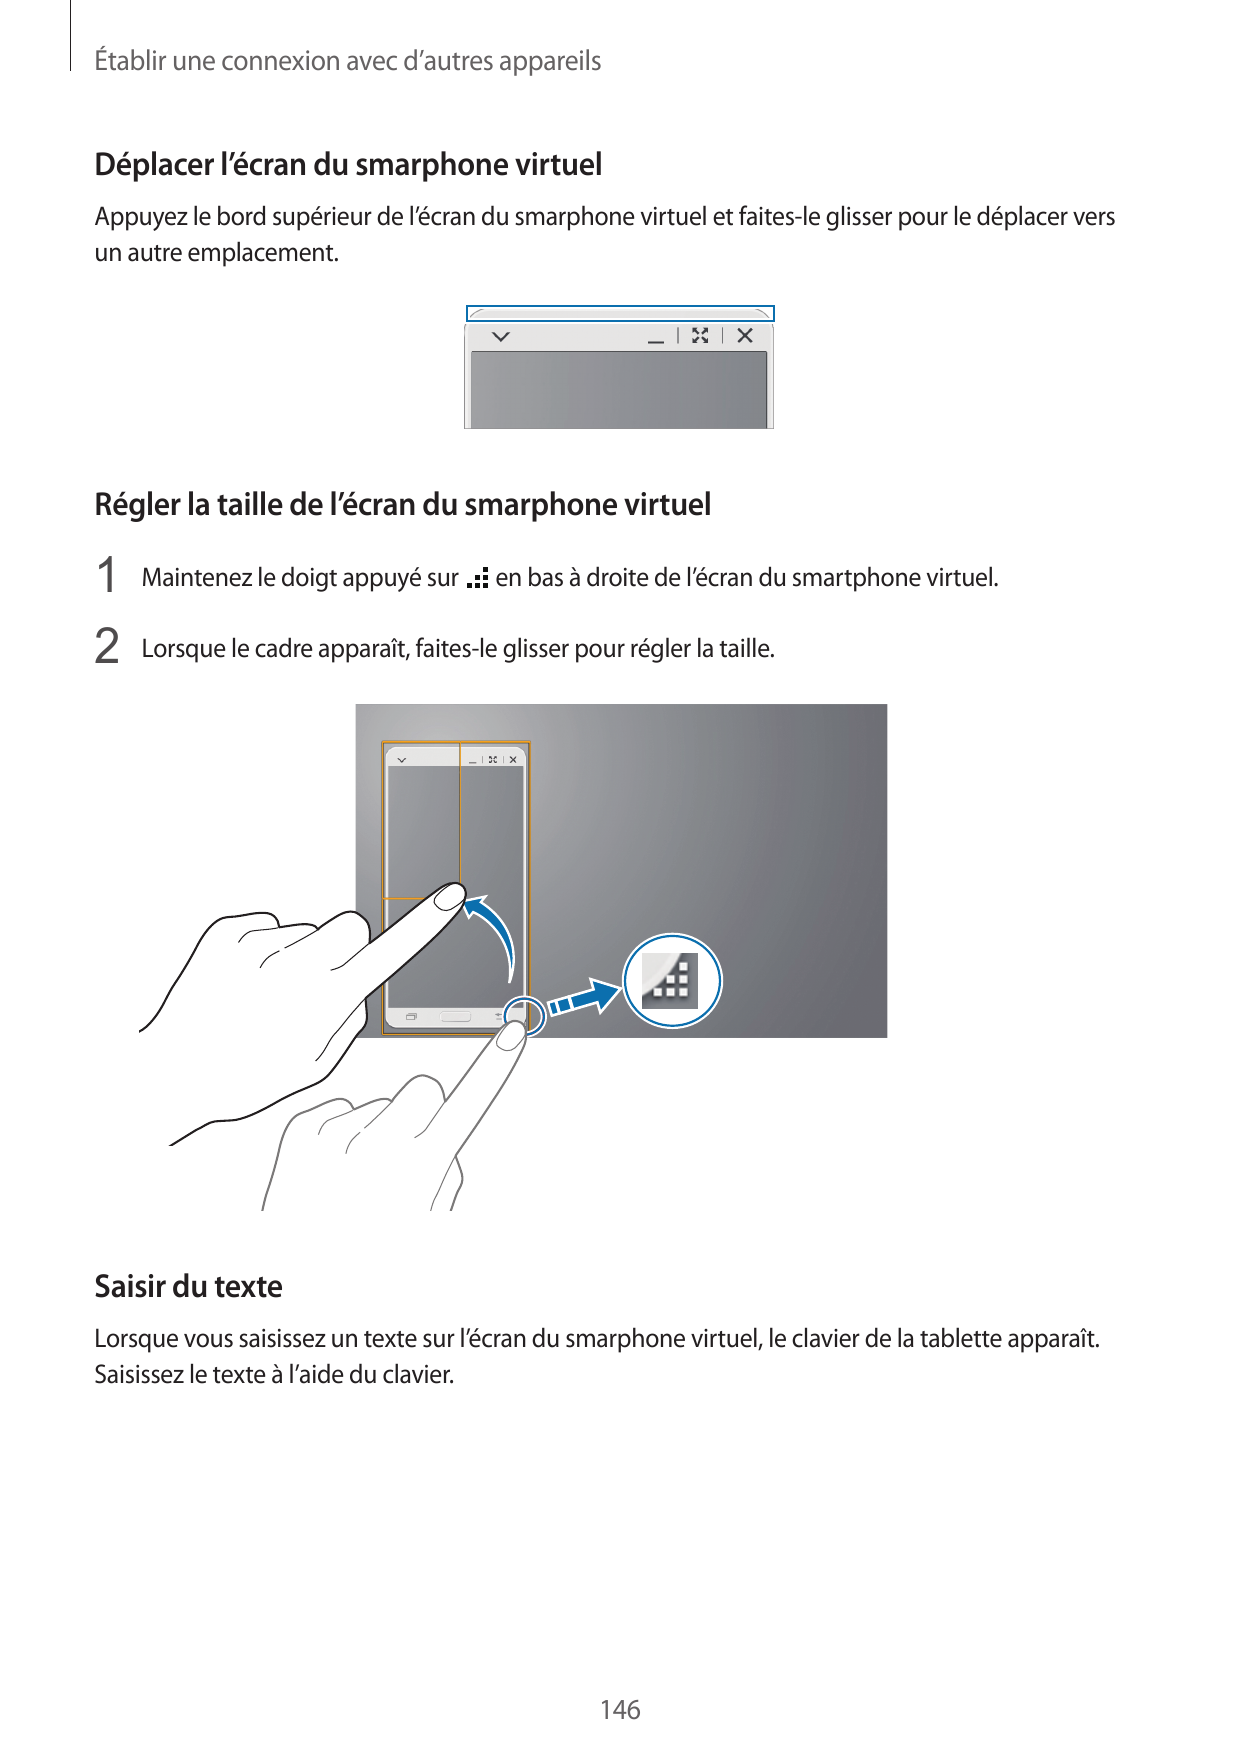 Établir une connexion avec d’autres appareilsDéplacer l’écran du smarphone virtuelAppuyez le bord supérieur de l’écran du smarph